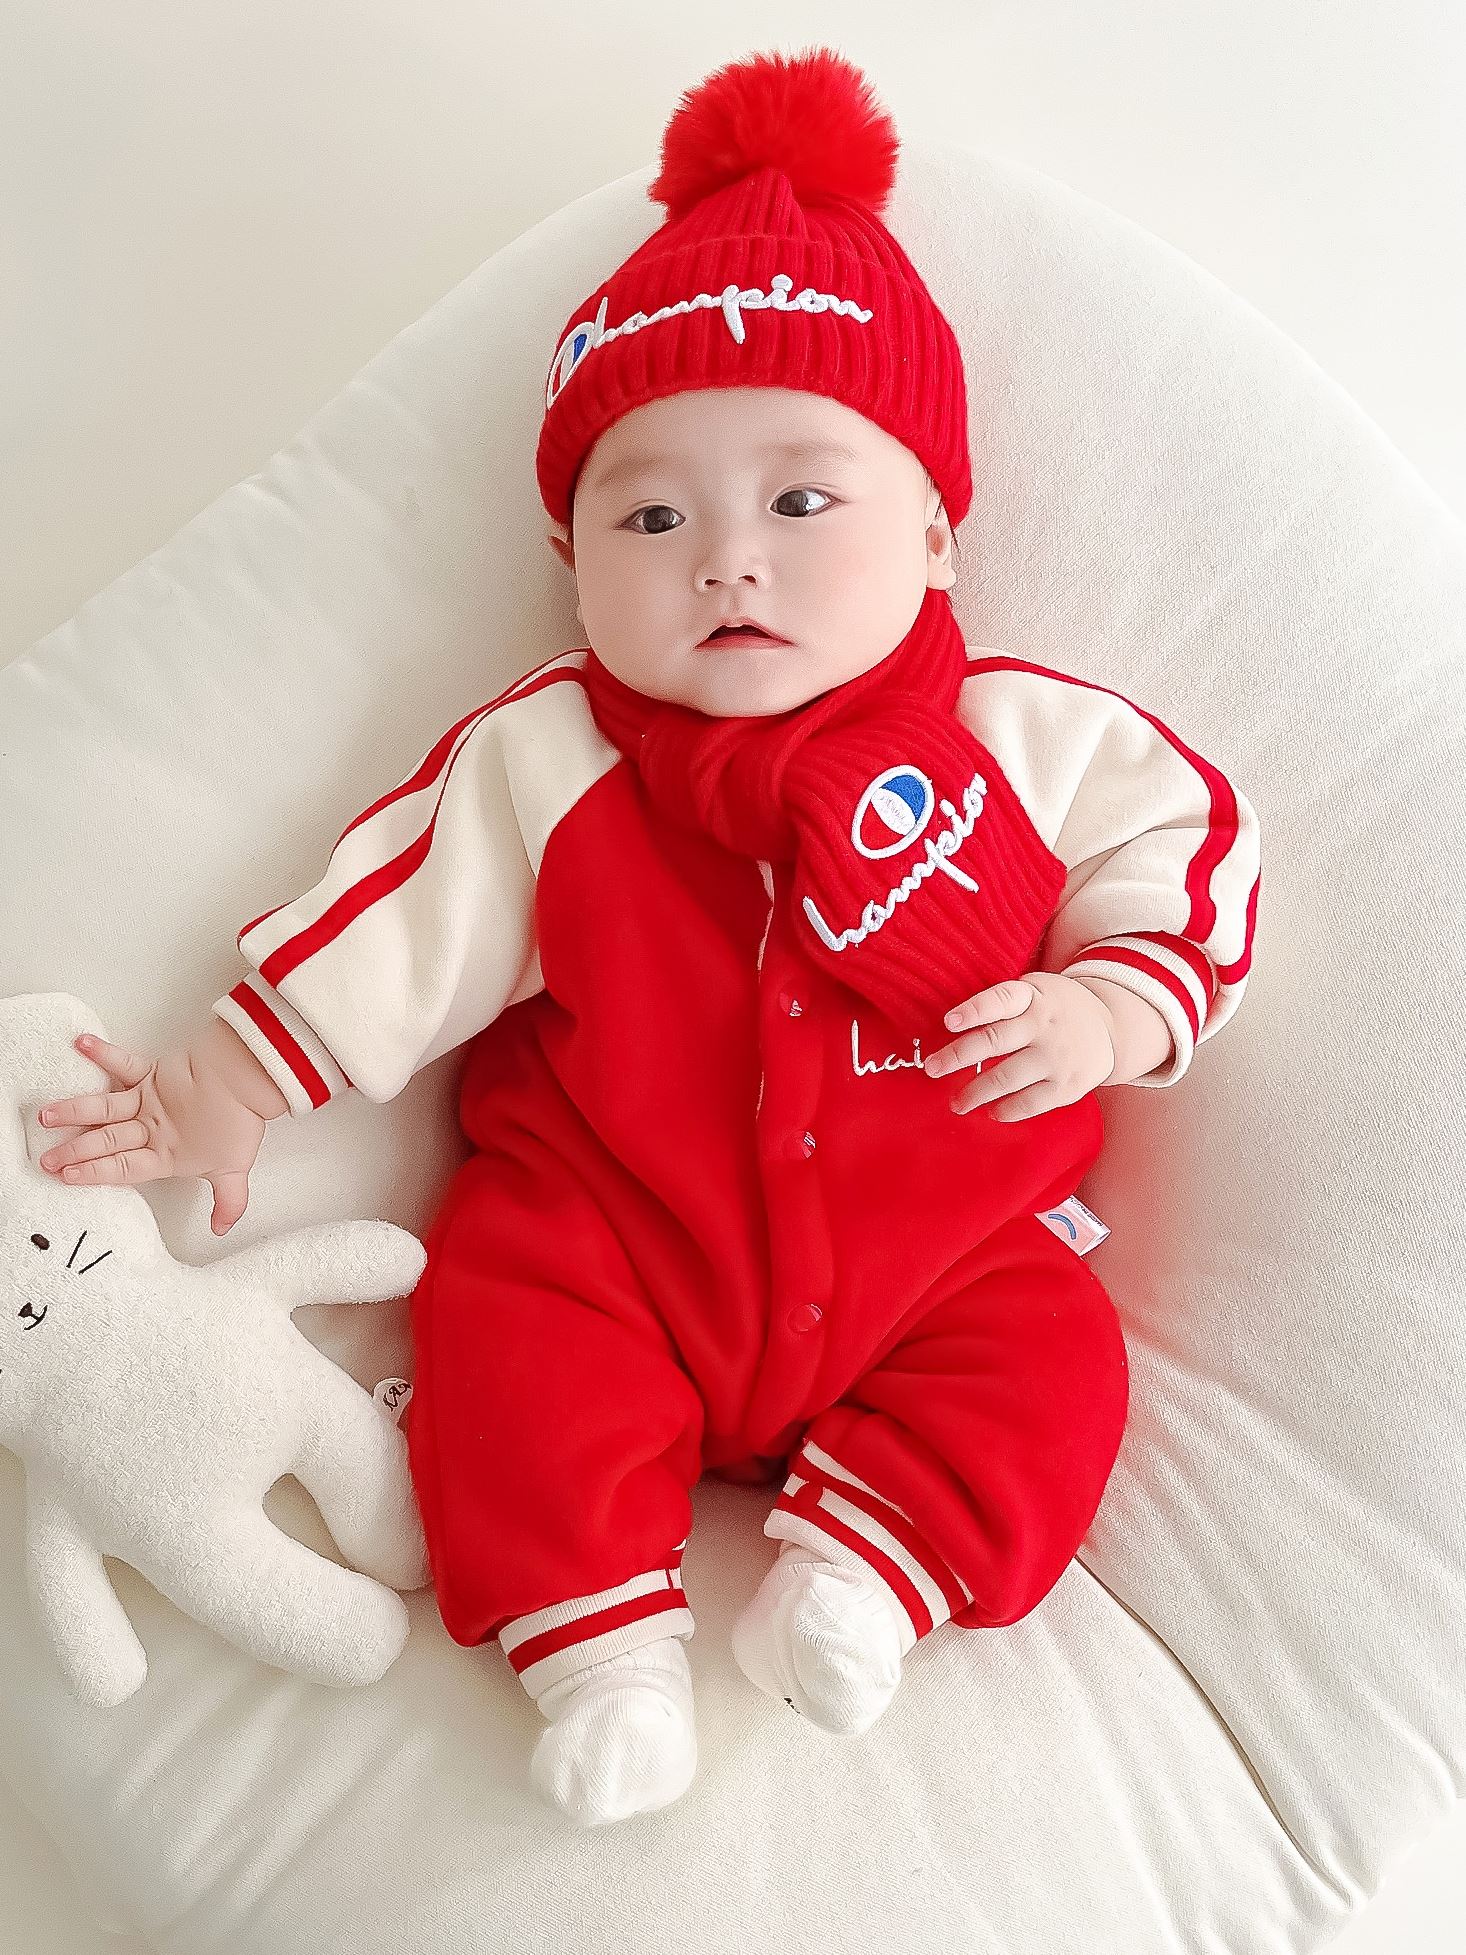 婴儿冬装连体衣6个月红色衣服3套装洋气哈衣男宝宝加绒抱衣外出服